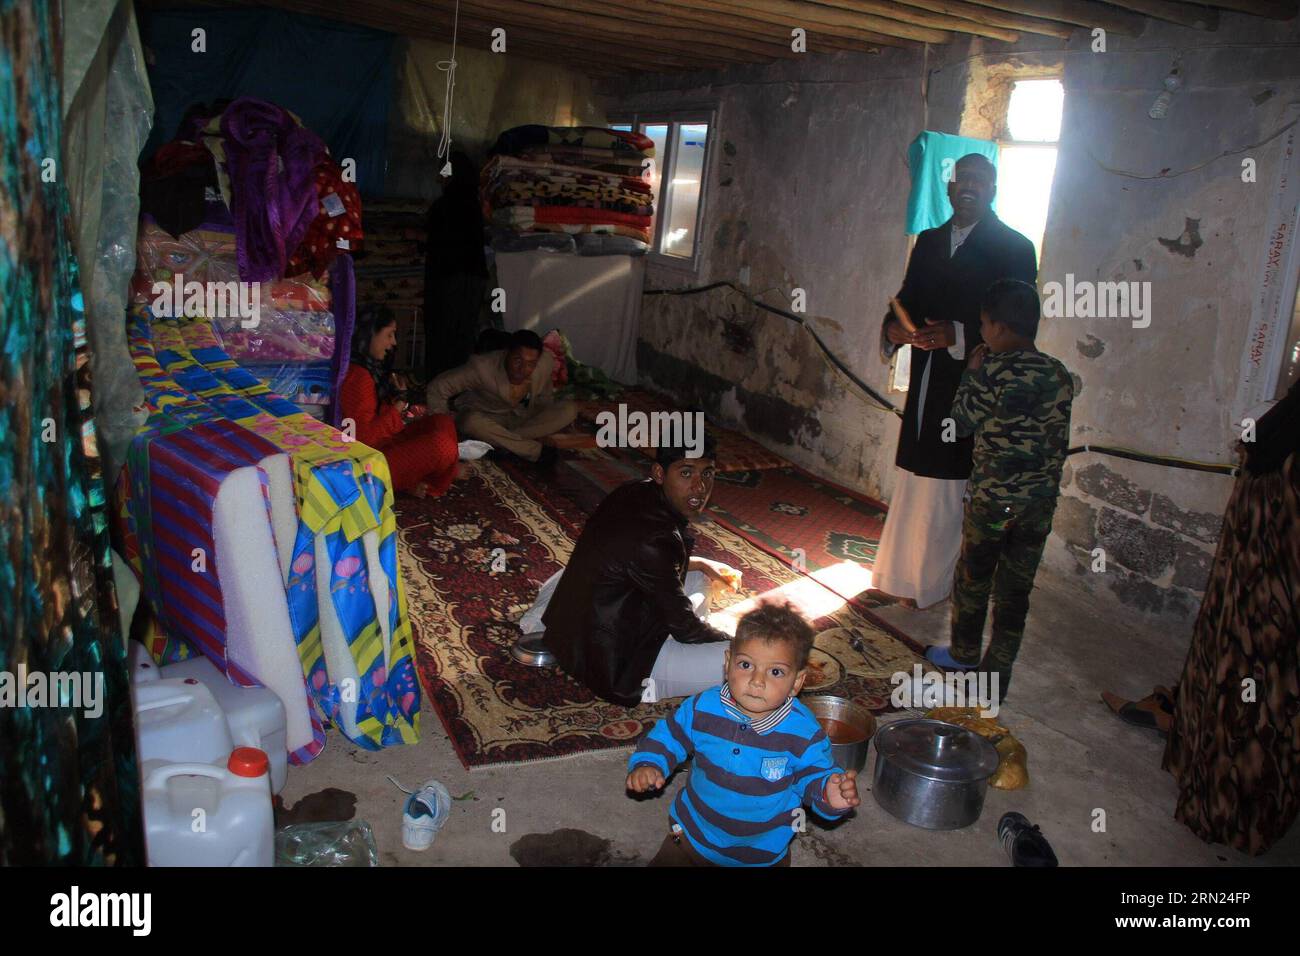 (150207) -- ERBIL, 07 de febrero de 2015 -- Una familia iraquí vive en una casa improvisada en Erbil, la capital de la región kurda iraquí, el 7 de febrero de 2015. Muchos iraquíes huyeron de Mosul en el norte de Irak después de que los militantes del Estado Islámico tomaron la ciudad y tomaron instalaciones públicas en las afueras de Erbil como sus hogares temporales. YaserxJawad PUBLICATIONxNOTxINxCHN Erbil 07 2015 de febrero a la familia iraquí vive en una casa improvisada en Erbil la ciudad capital de la región kurda iraquí EL 7 2015 de febrero muchas celebridades iraquíes fuera del norte de Irak S Mosul después del milit del Estado Islámico Foto de stock